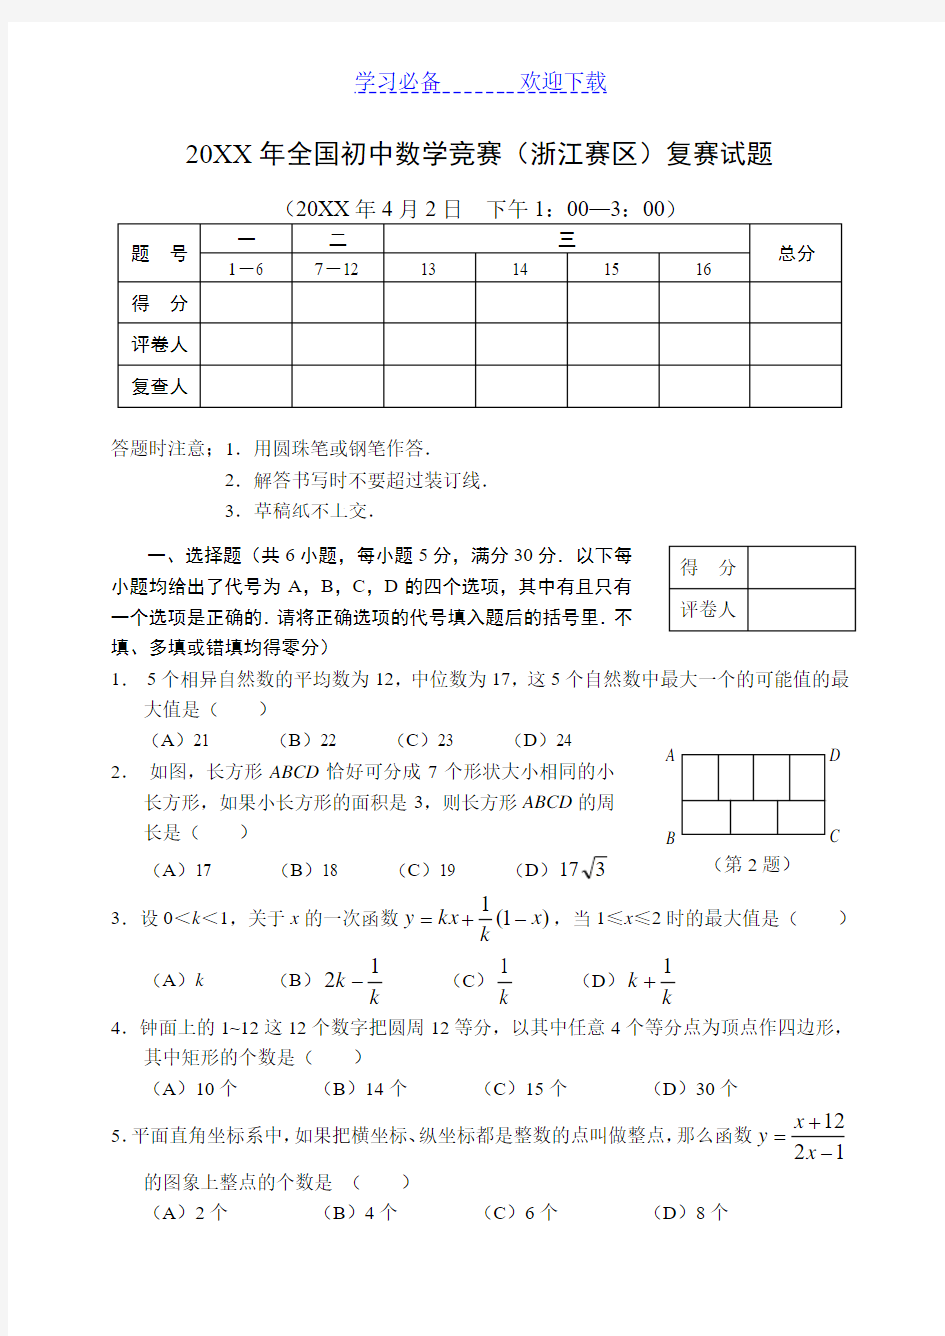 全国初中数学竞赛(浙江赛区)复赛试题及参考答案